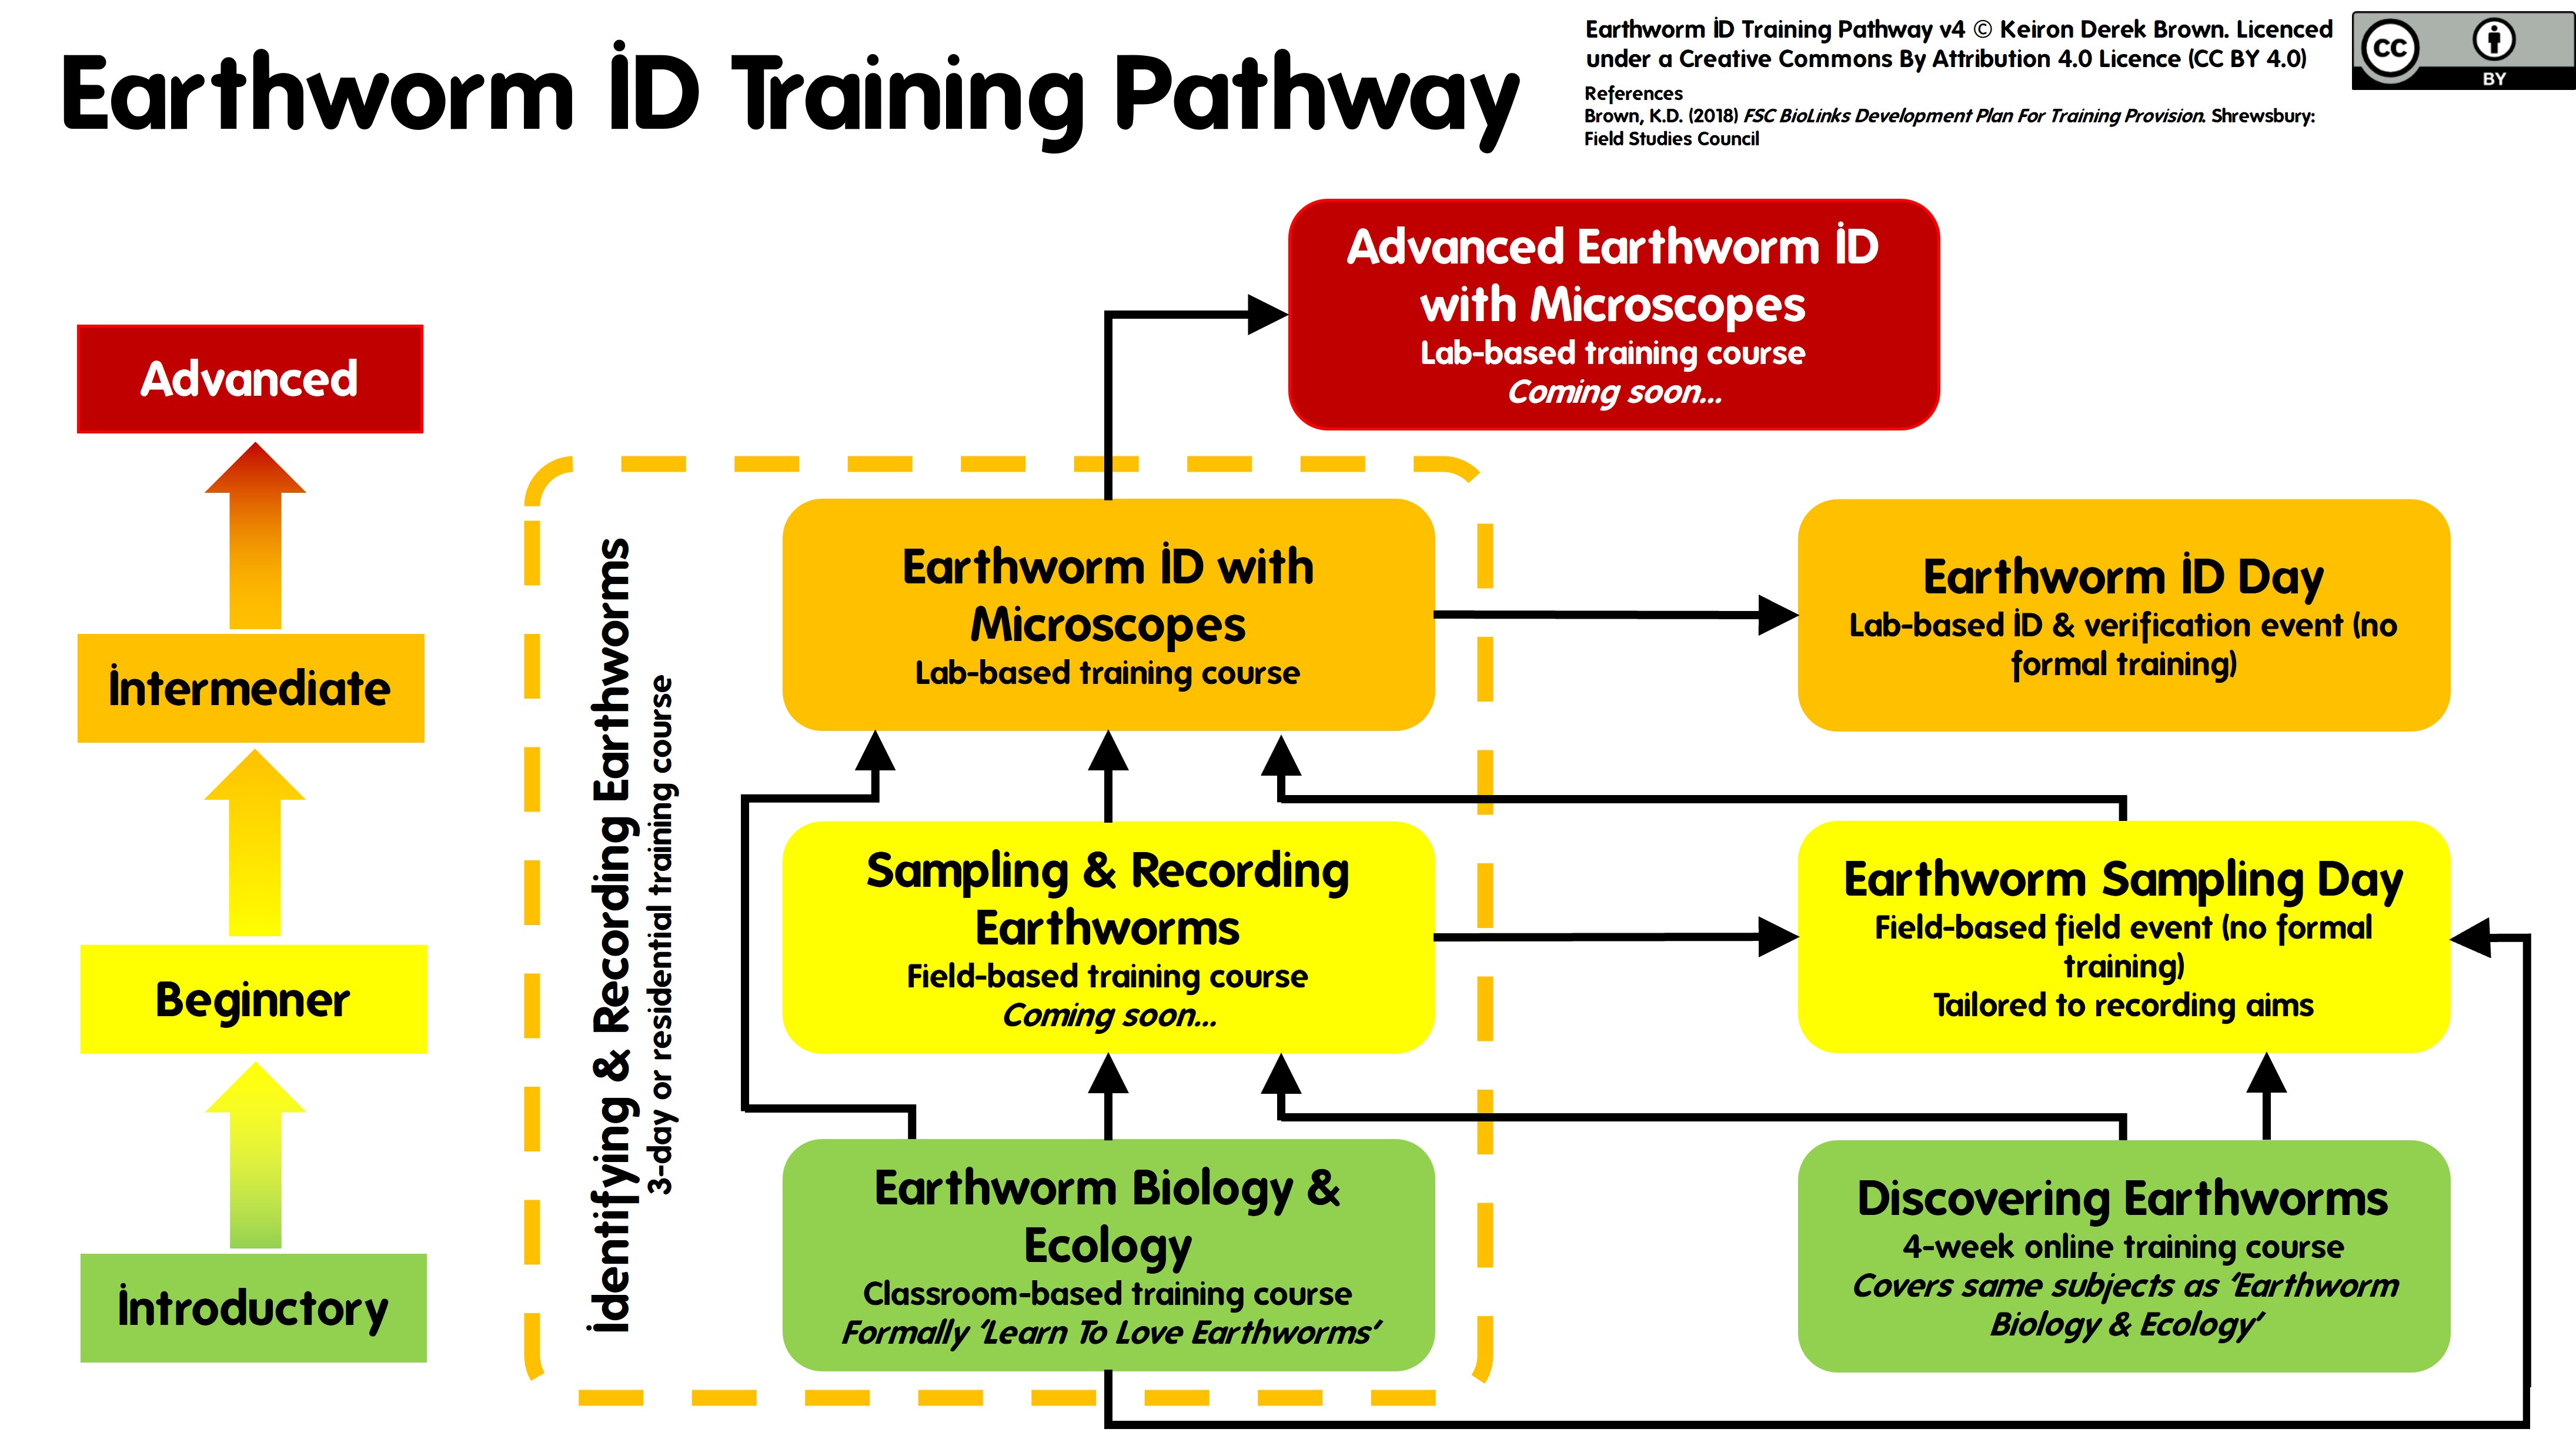 Earthworm ID Training Pathway